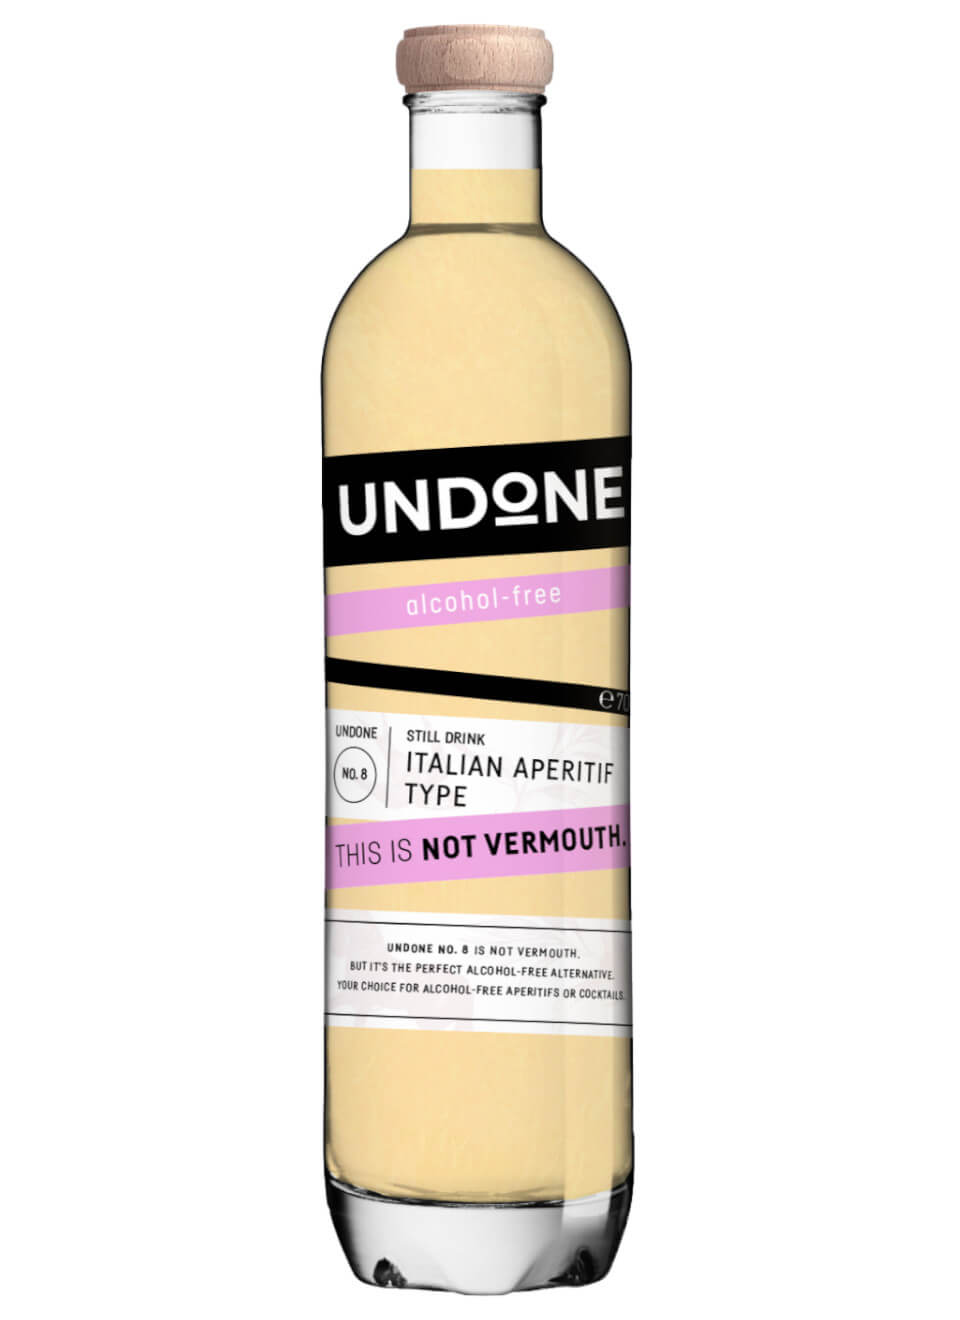 Undone No. 8 Italian Aperitif alkoholfreier Wermut 0,7 L günstig kaufen |  Spirituosenworld.de - Online Shop für Spirituosen und Barzubehör